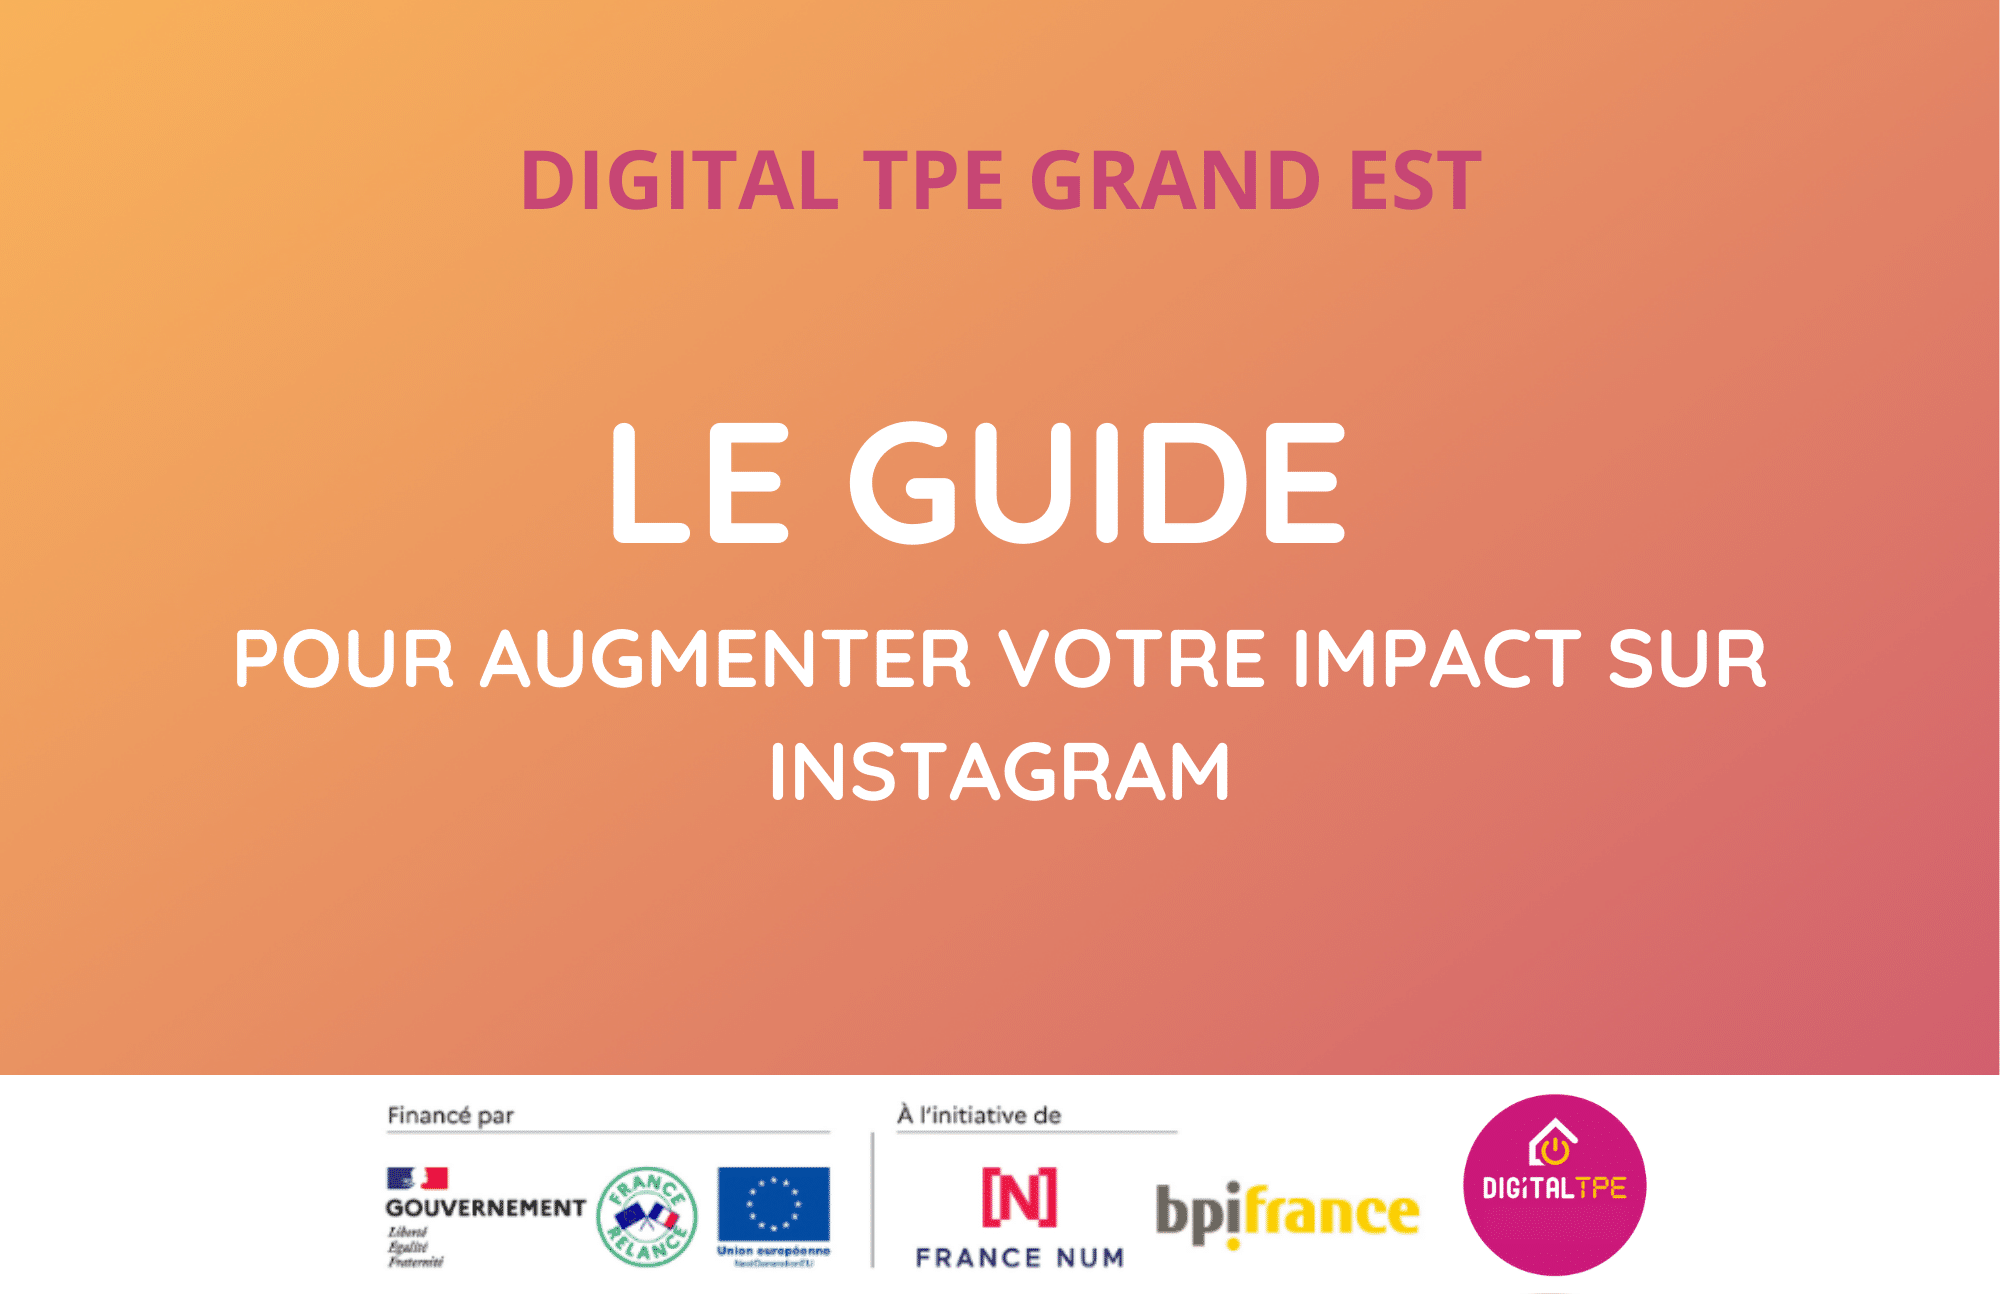 Visuel article de blog Digital TPE : Le guide pour augmenter votre impact sur Instagram